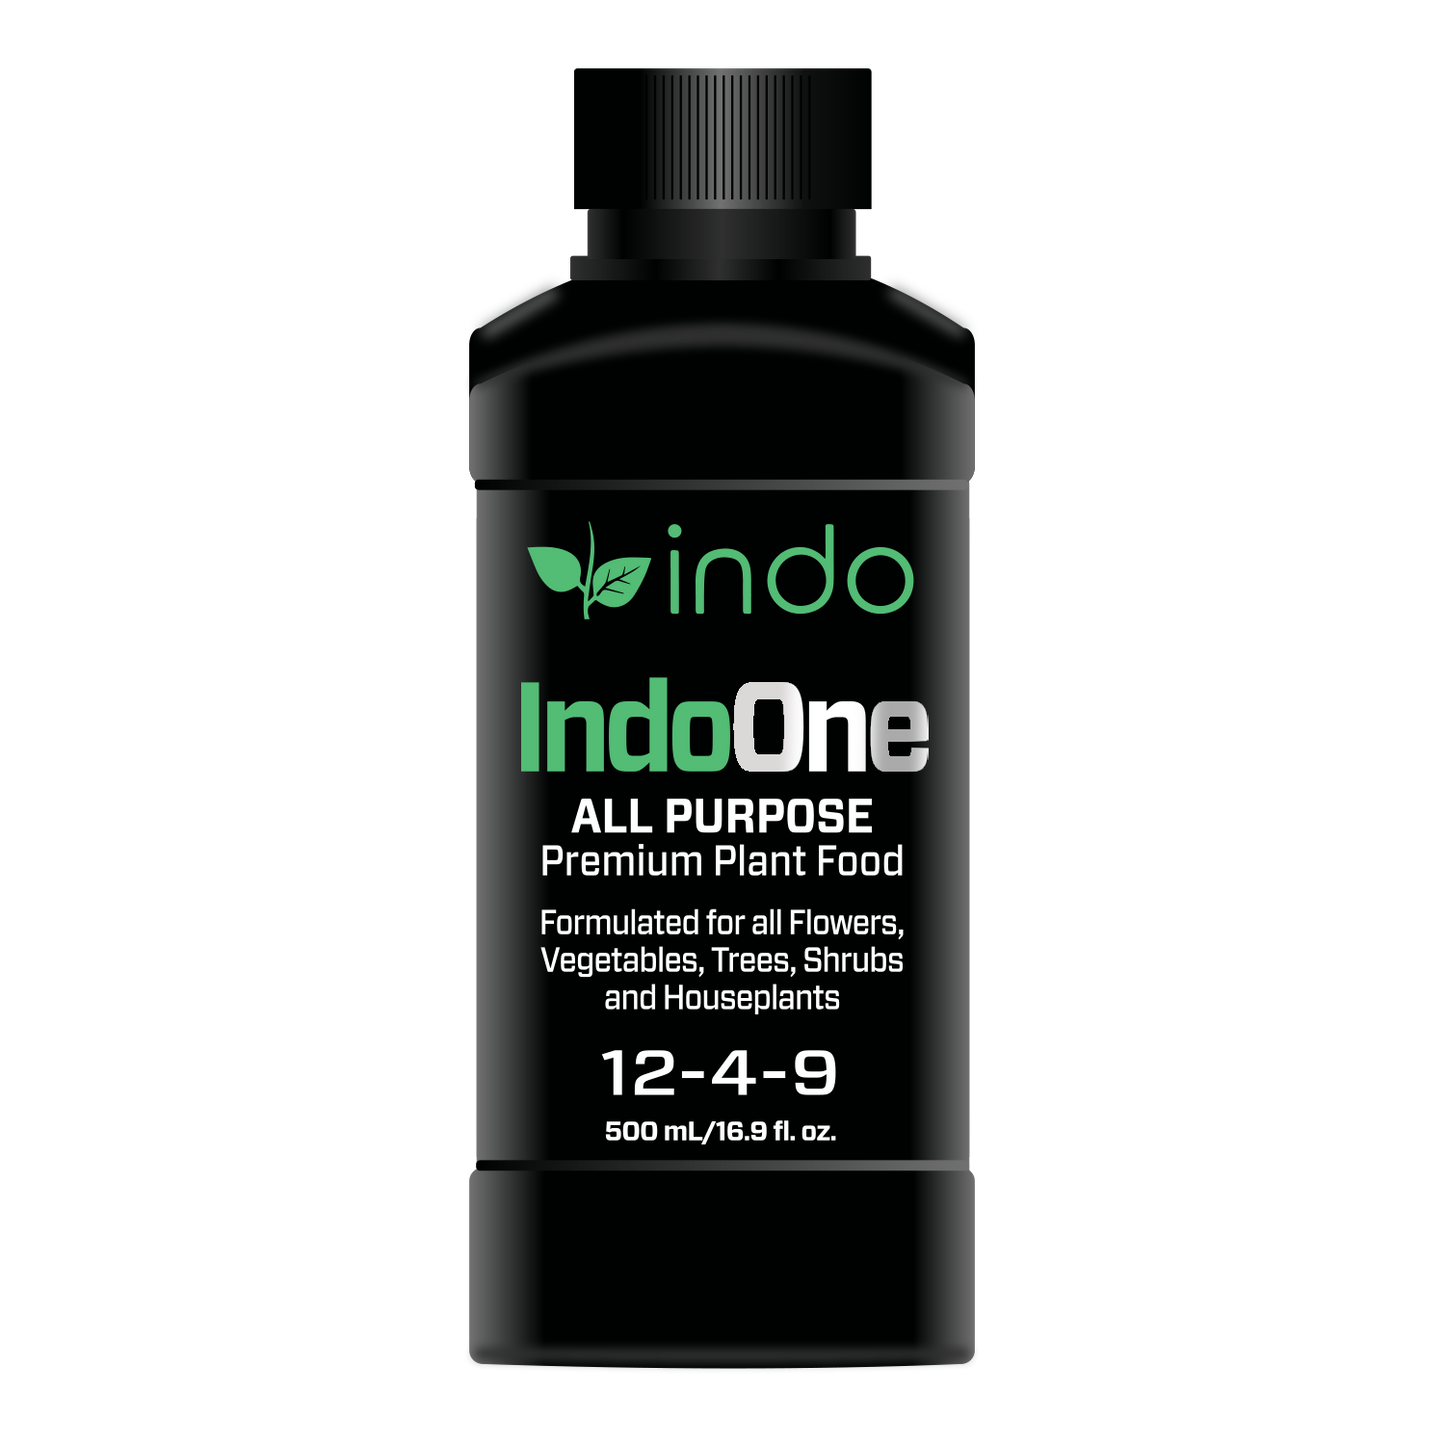 Indo ONE - All Purpose Premium Plant Food